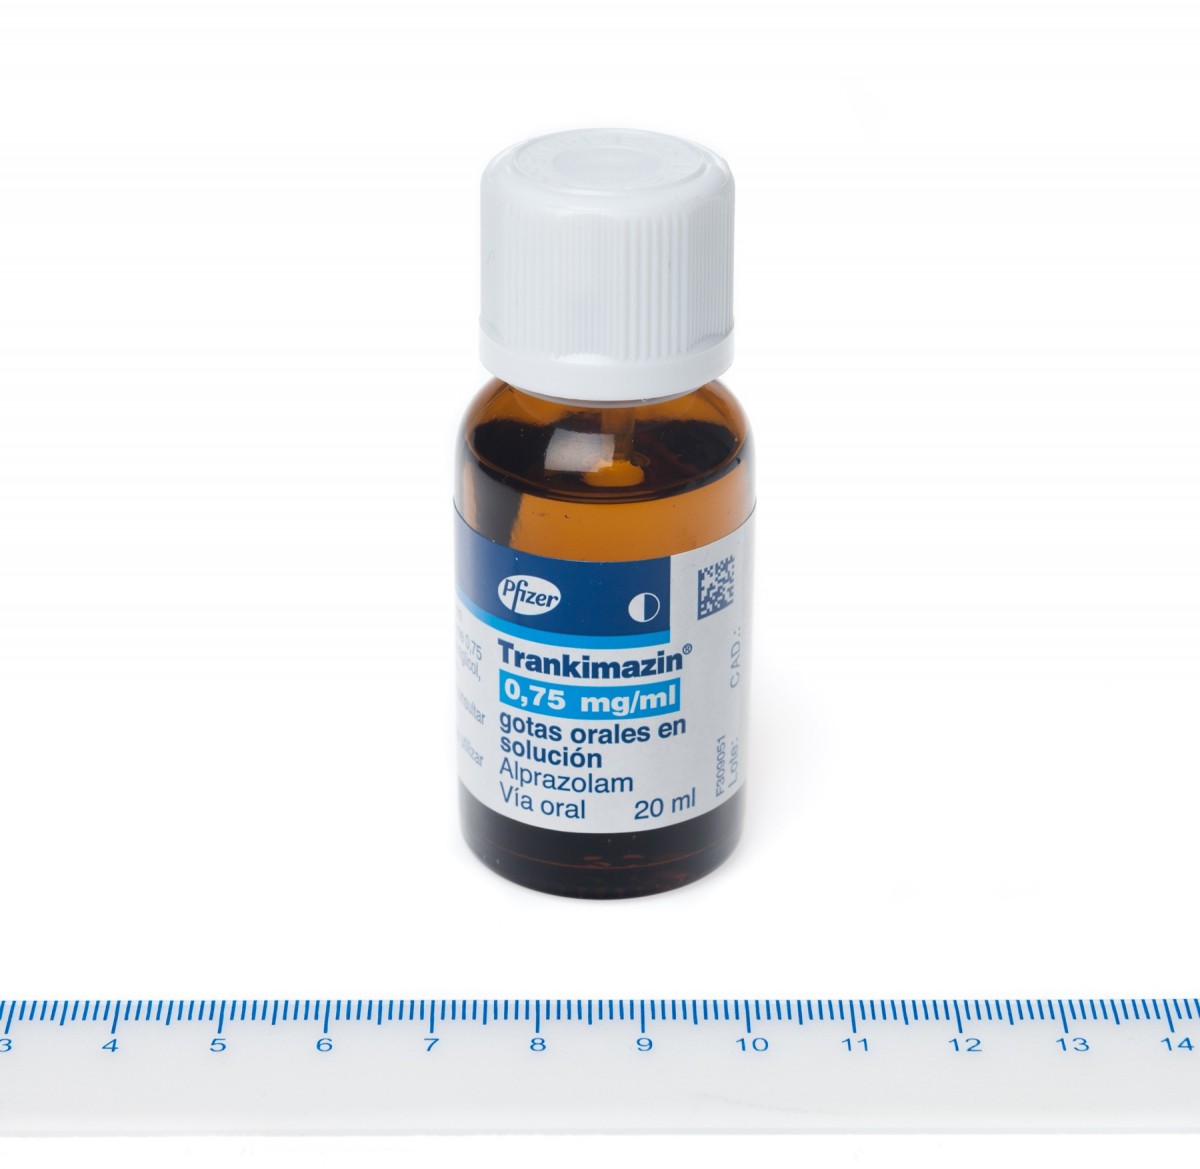 TRANKIMAZIN 0,75  mg/ml GOTAS ORALES EN SOLUCION, 1 frasco de 20 ml fotografía de la forma farmacéutica.